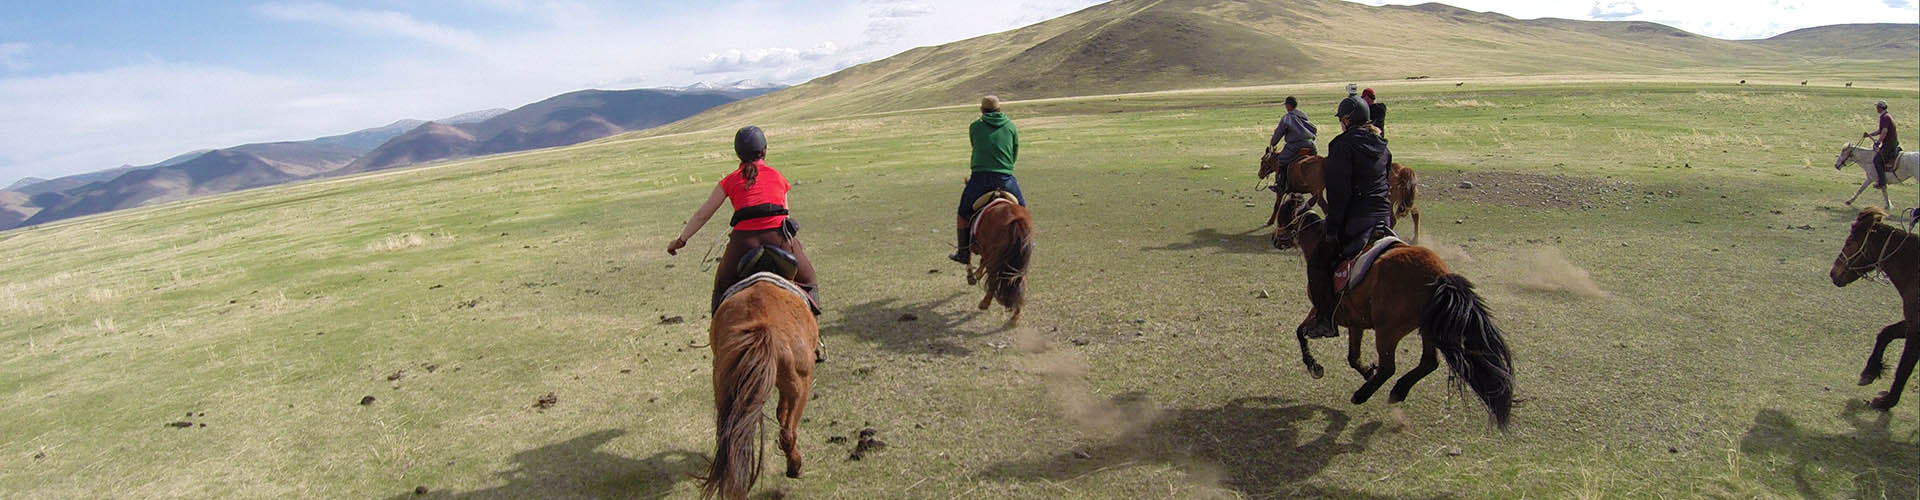 Mongolia on Horseback